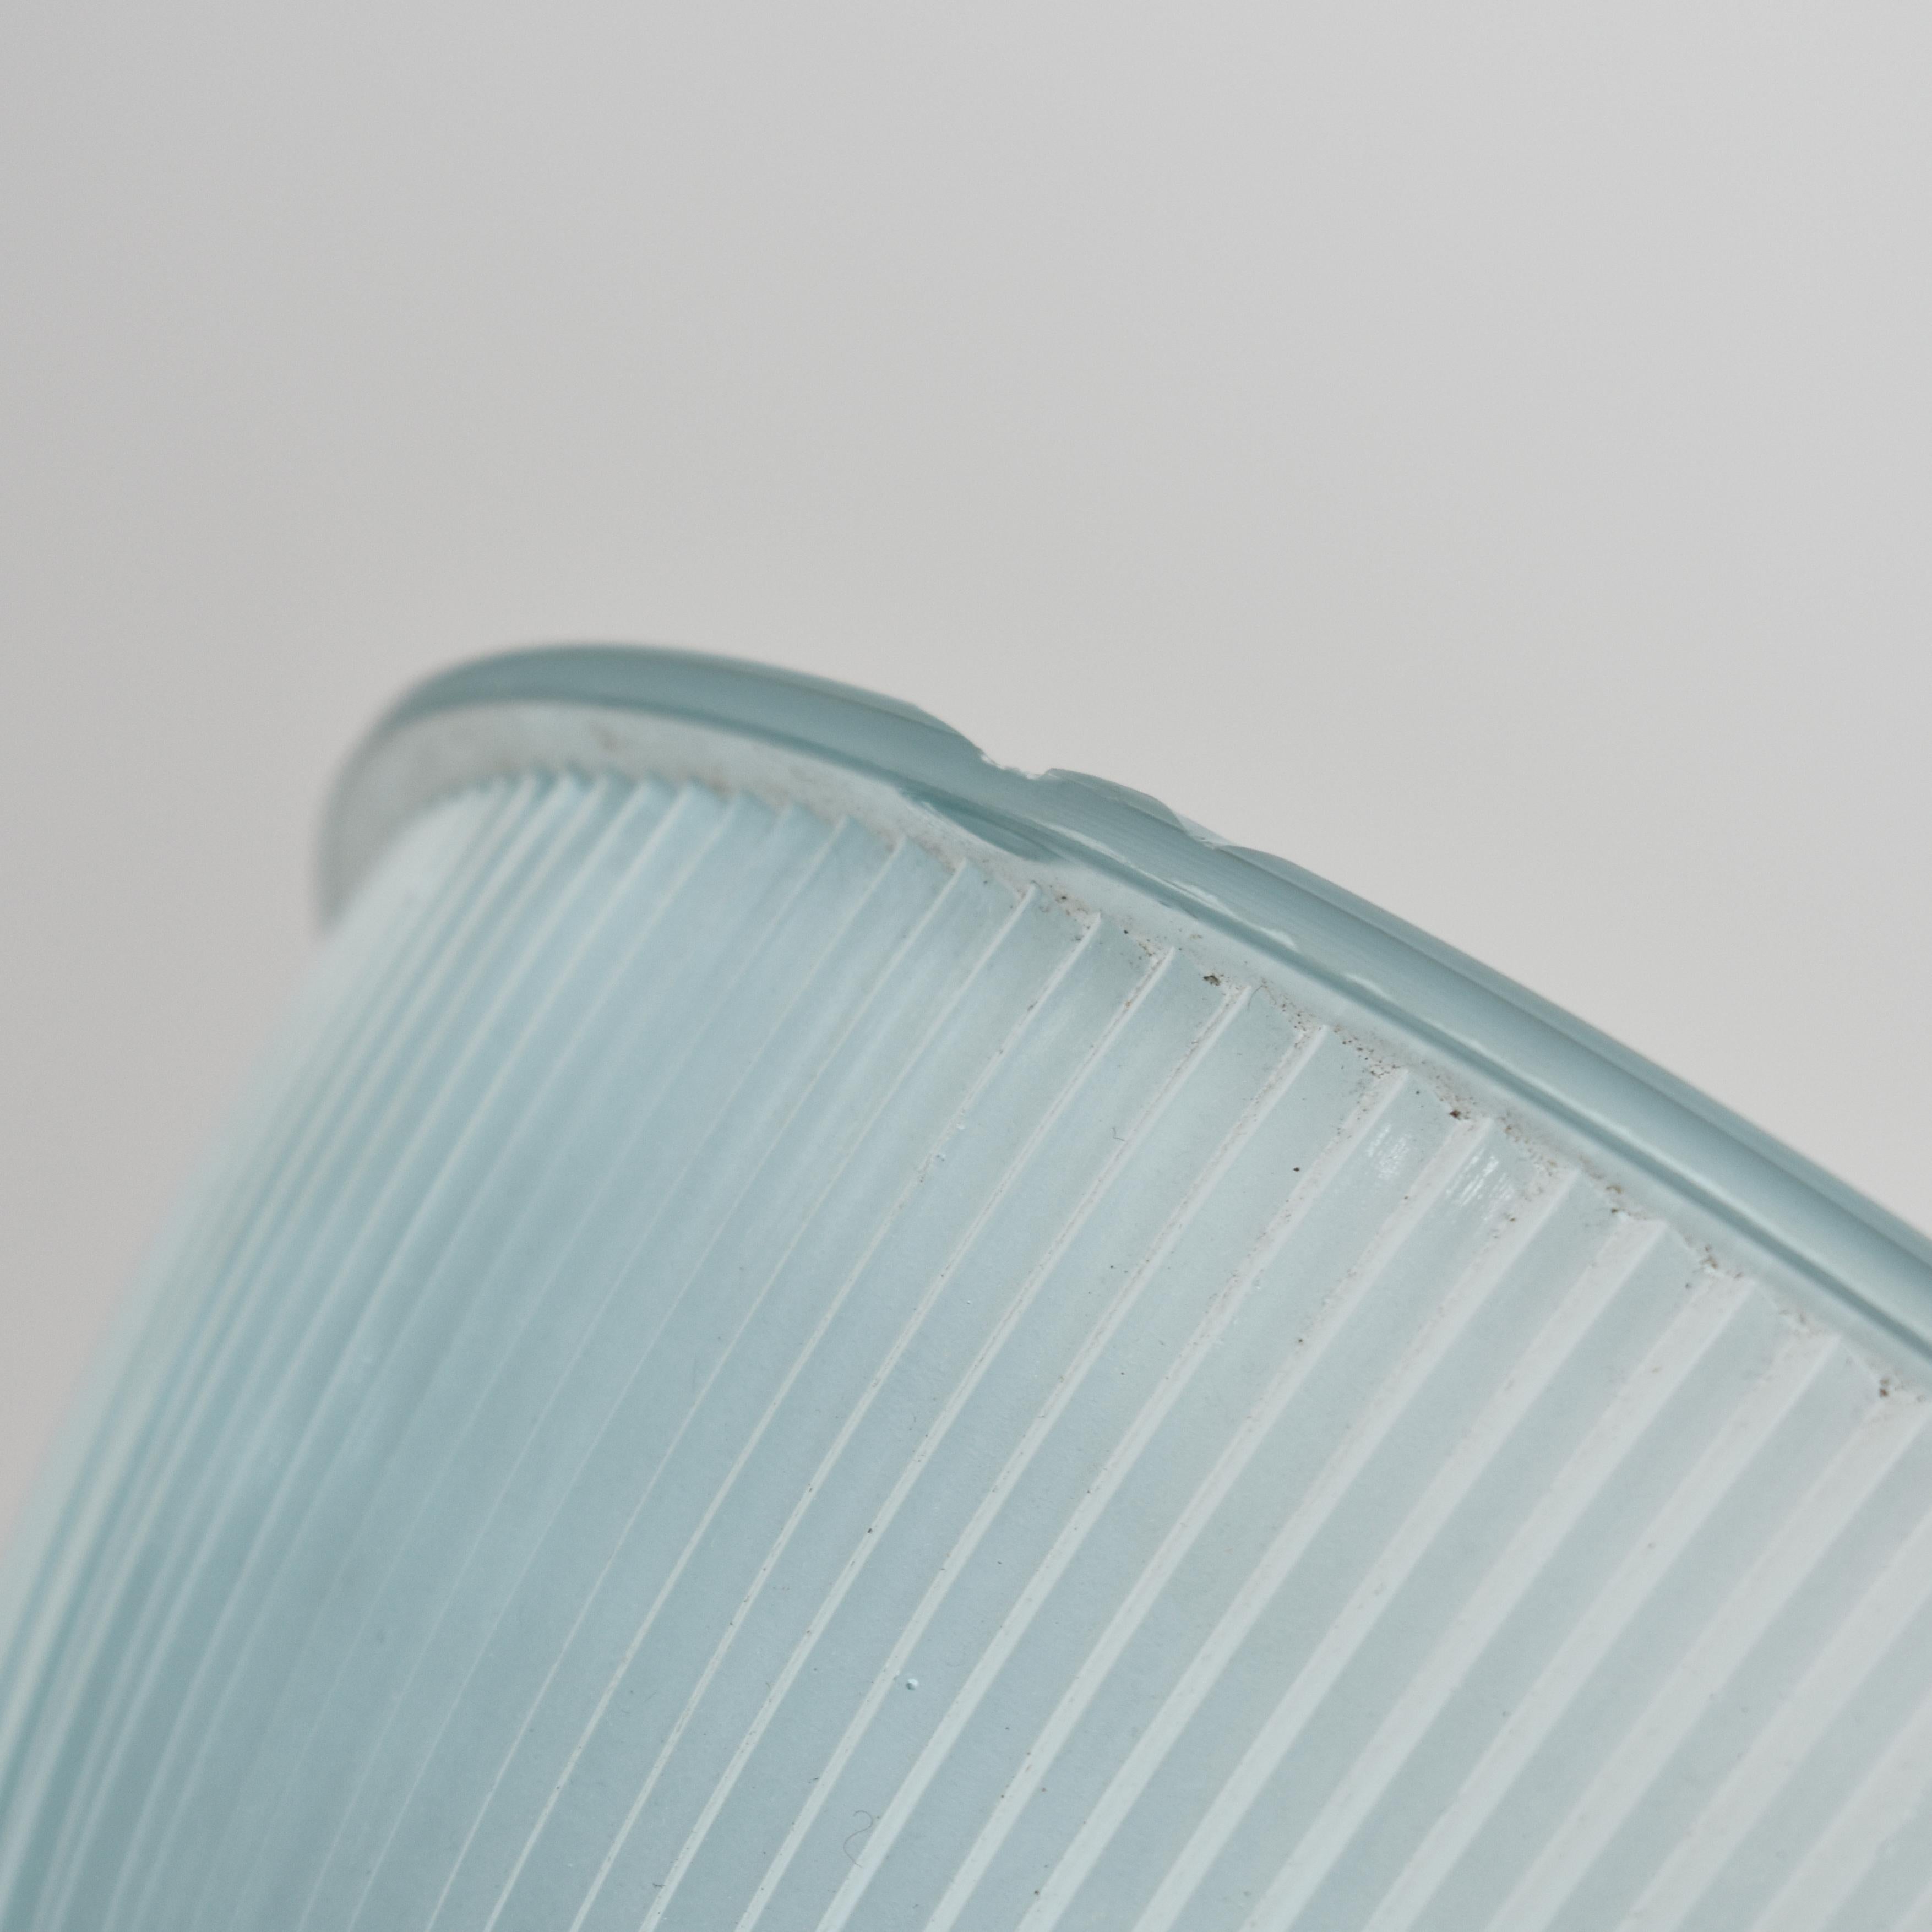 Lampe pendante ancienne en Holophane - Teinte bleue - A

Lampe à cloche en verre vintage fabriquée par 'Holophane' dans une variation inhabituelle de couleur de verre bleu. La lampe est dotée d'une galerie GEC polie, estampillée de la marque